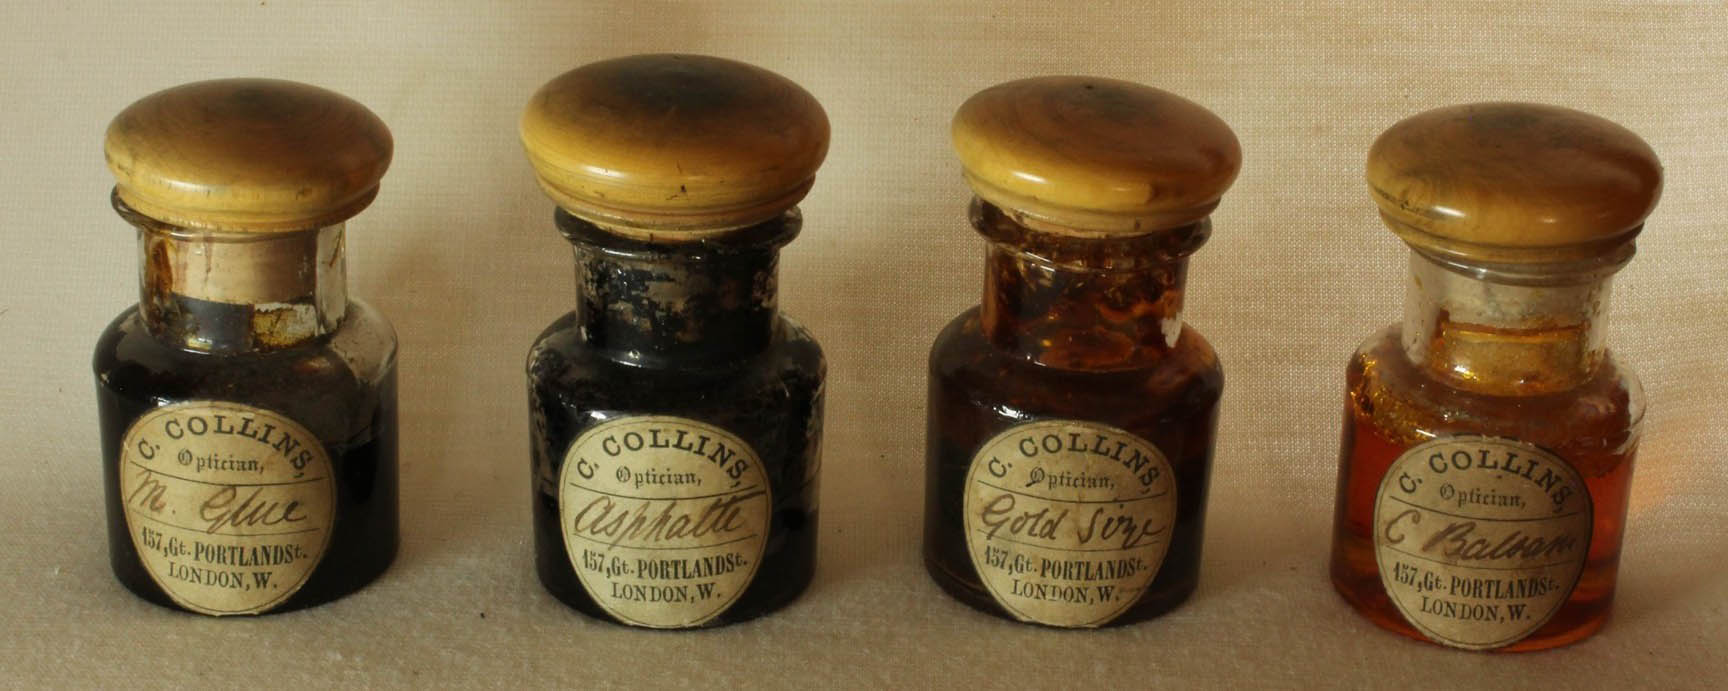 collins bottles